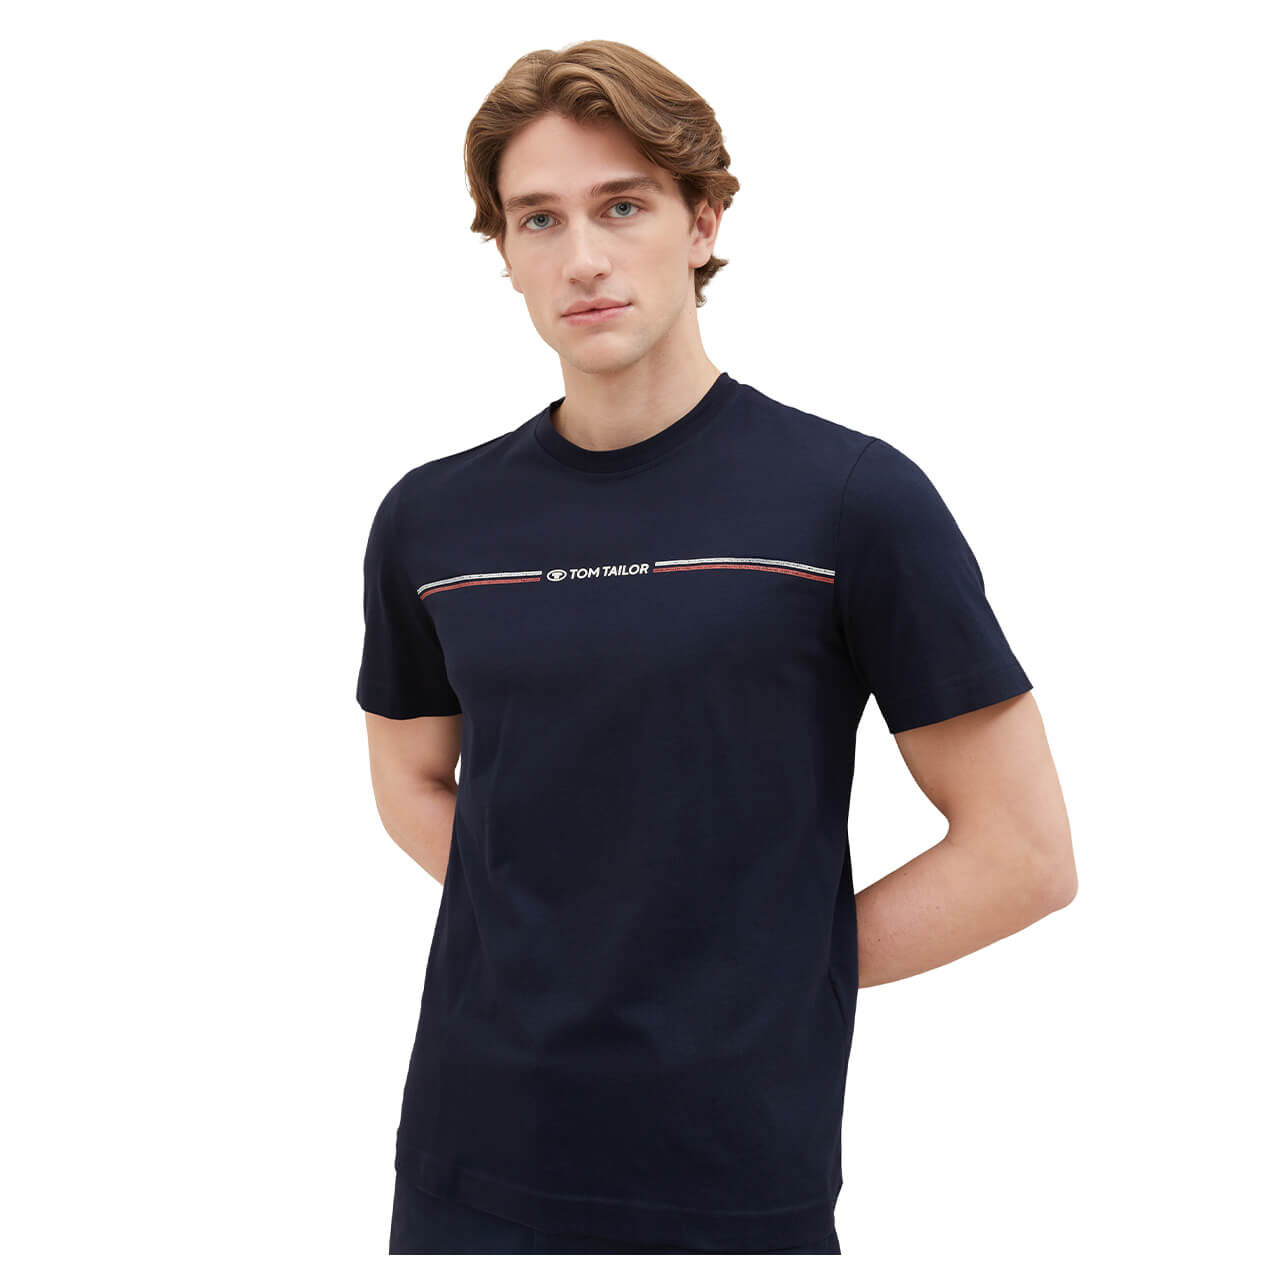 Tom Tailor Herren T-Shirt blue logo print